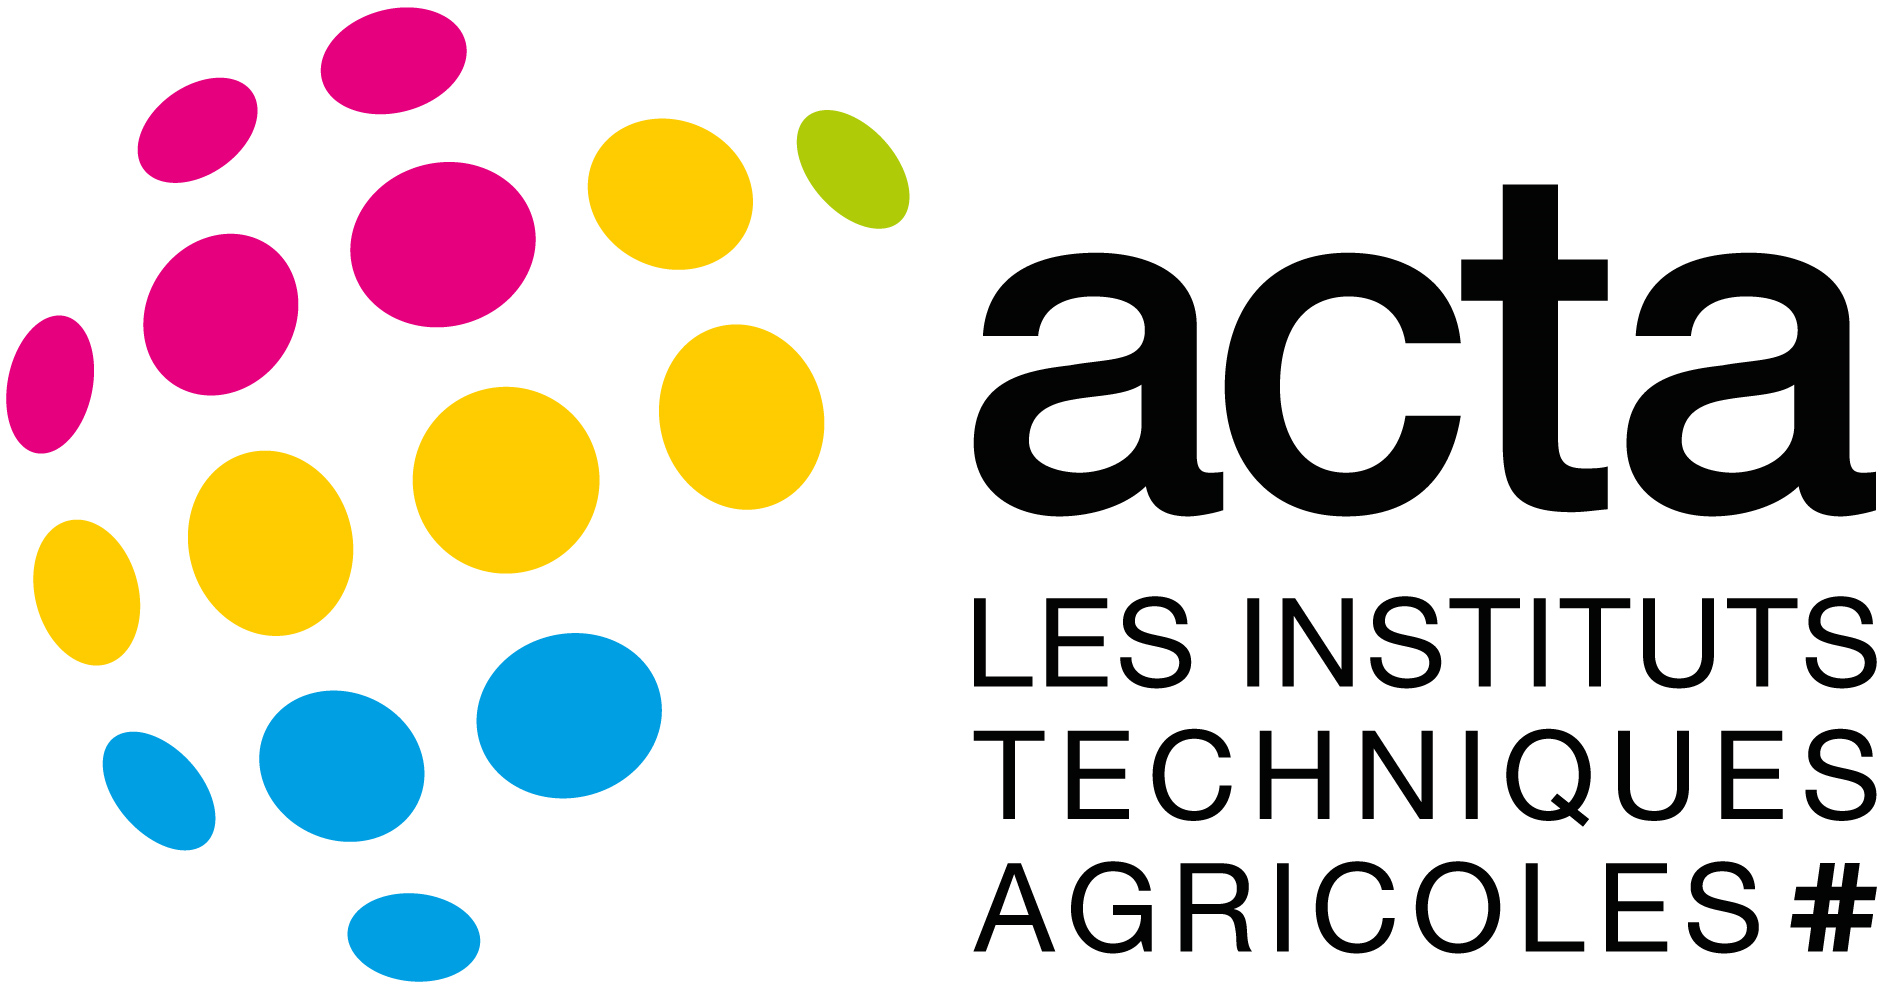 ASSOCIATION DE COORDINATION TECHNIQUE AGRICOLE (ACTA)